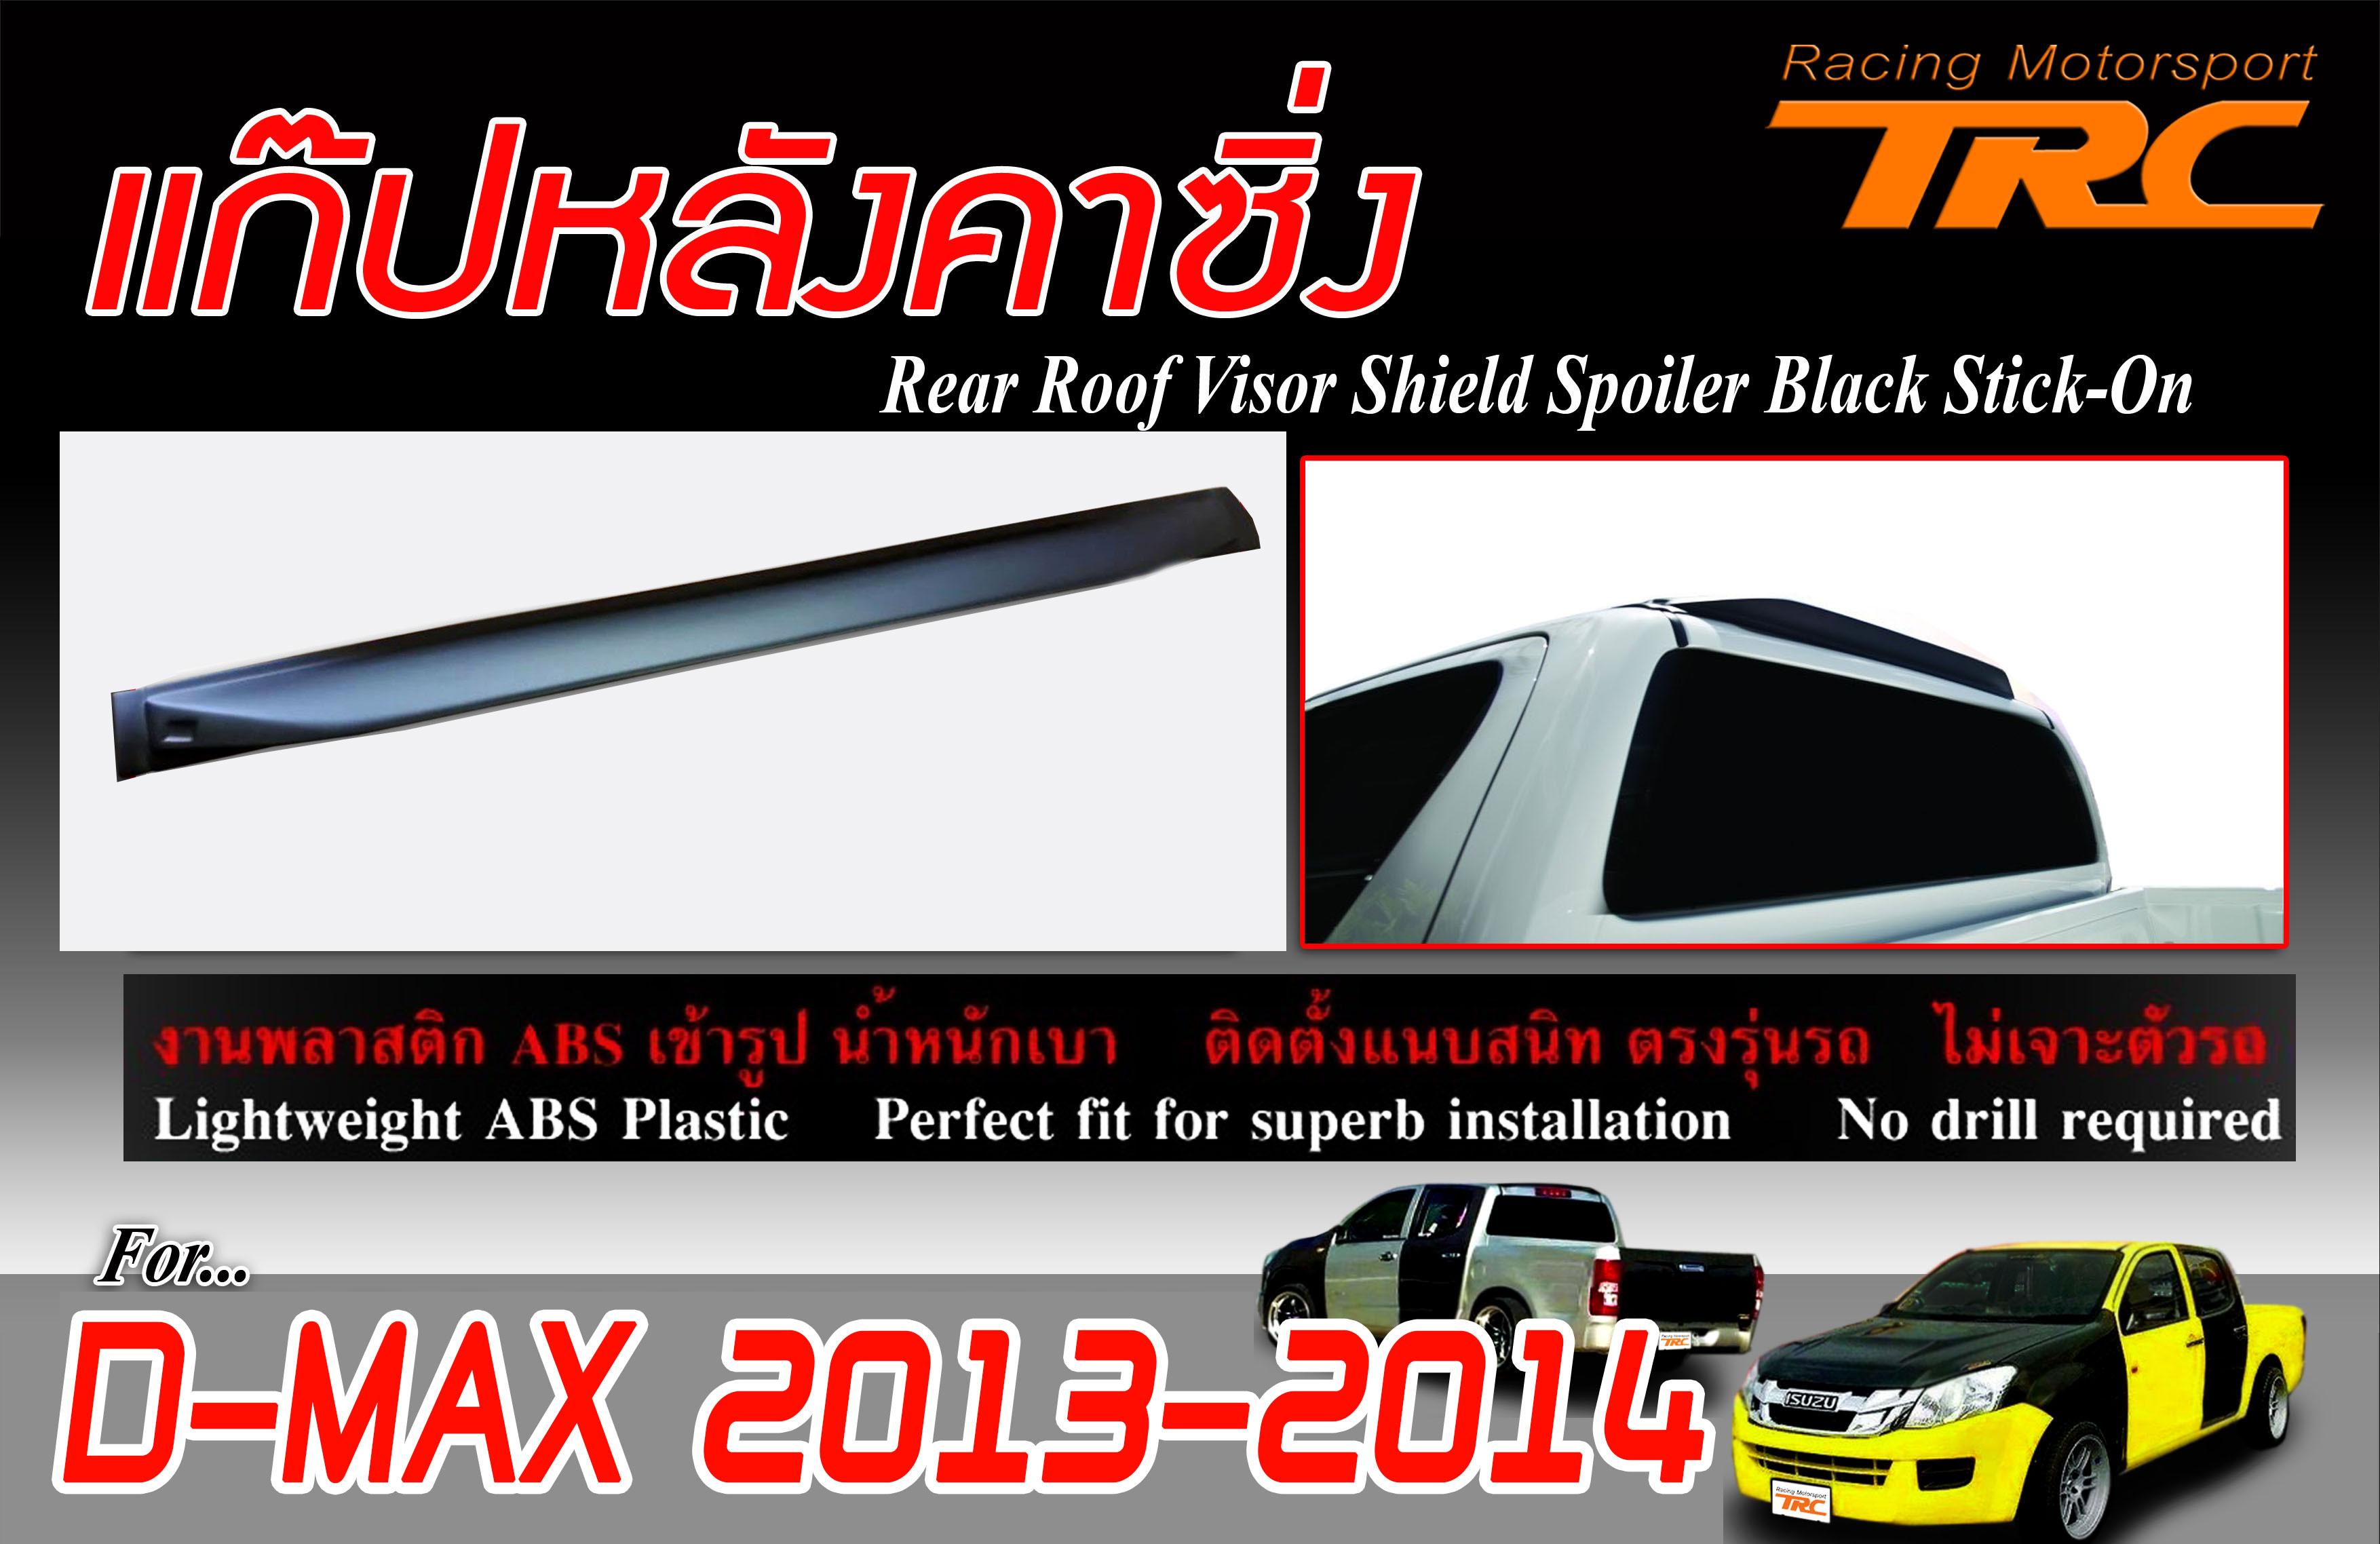 D-MAX 2013 2014 2015 สปอยเลอร์ แก๊ปหลังซิ่ง พลาสติก ABS สีดำงานไทย